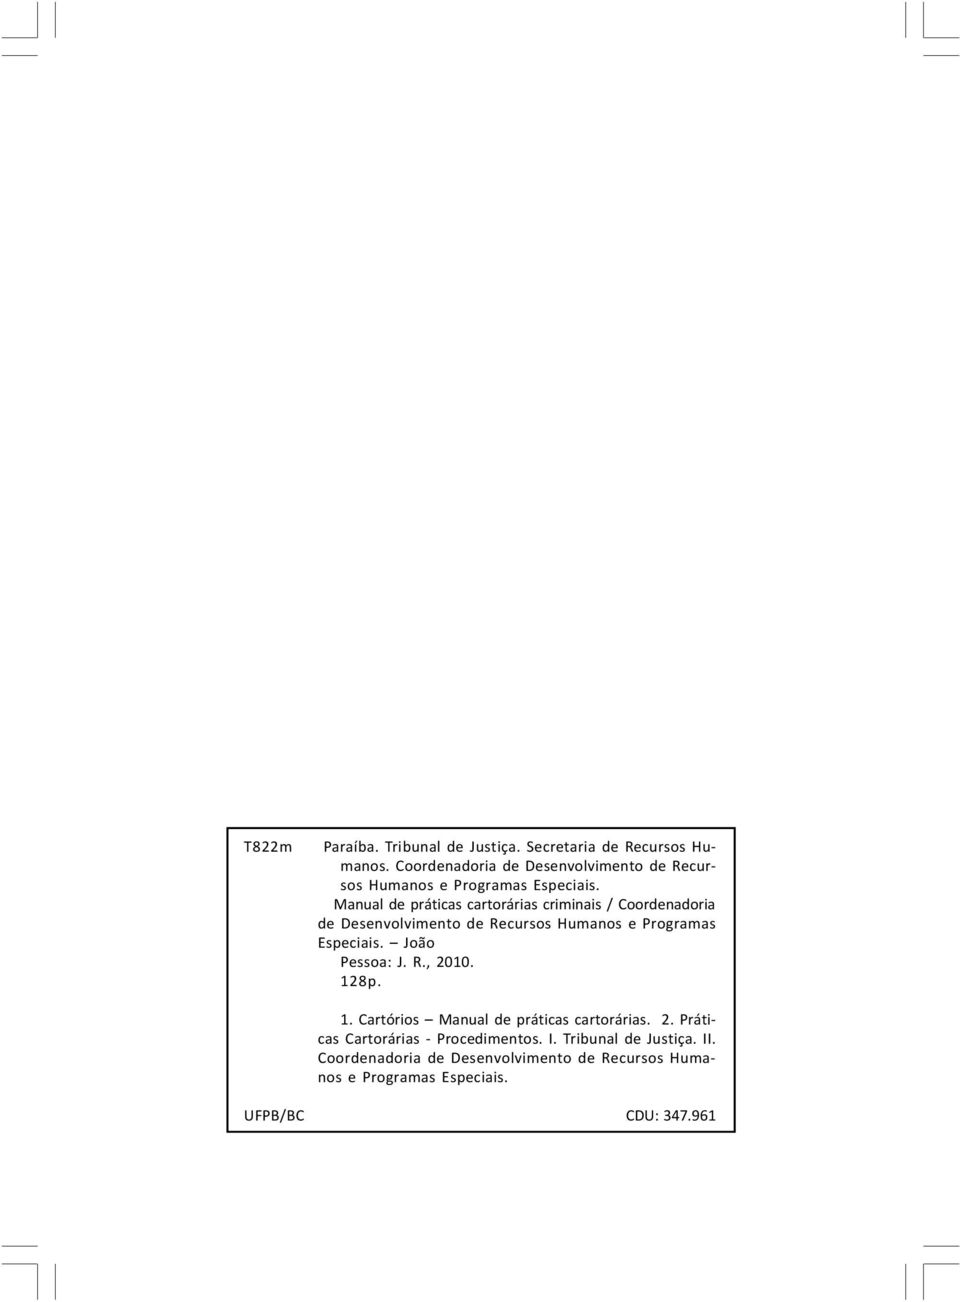 Manual de práticas cartorárias criminais /  João Pessoa: J. R., 2010. 128p. 1. Cartórios Manual de práticas cartorárias. 2. Práticas Cartorárias - Procedimentos.